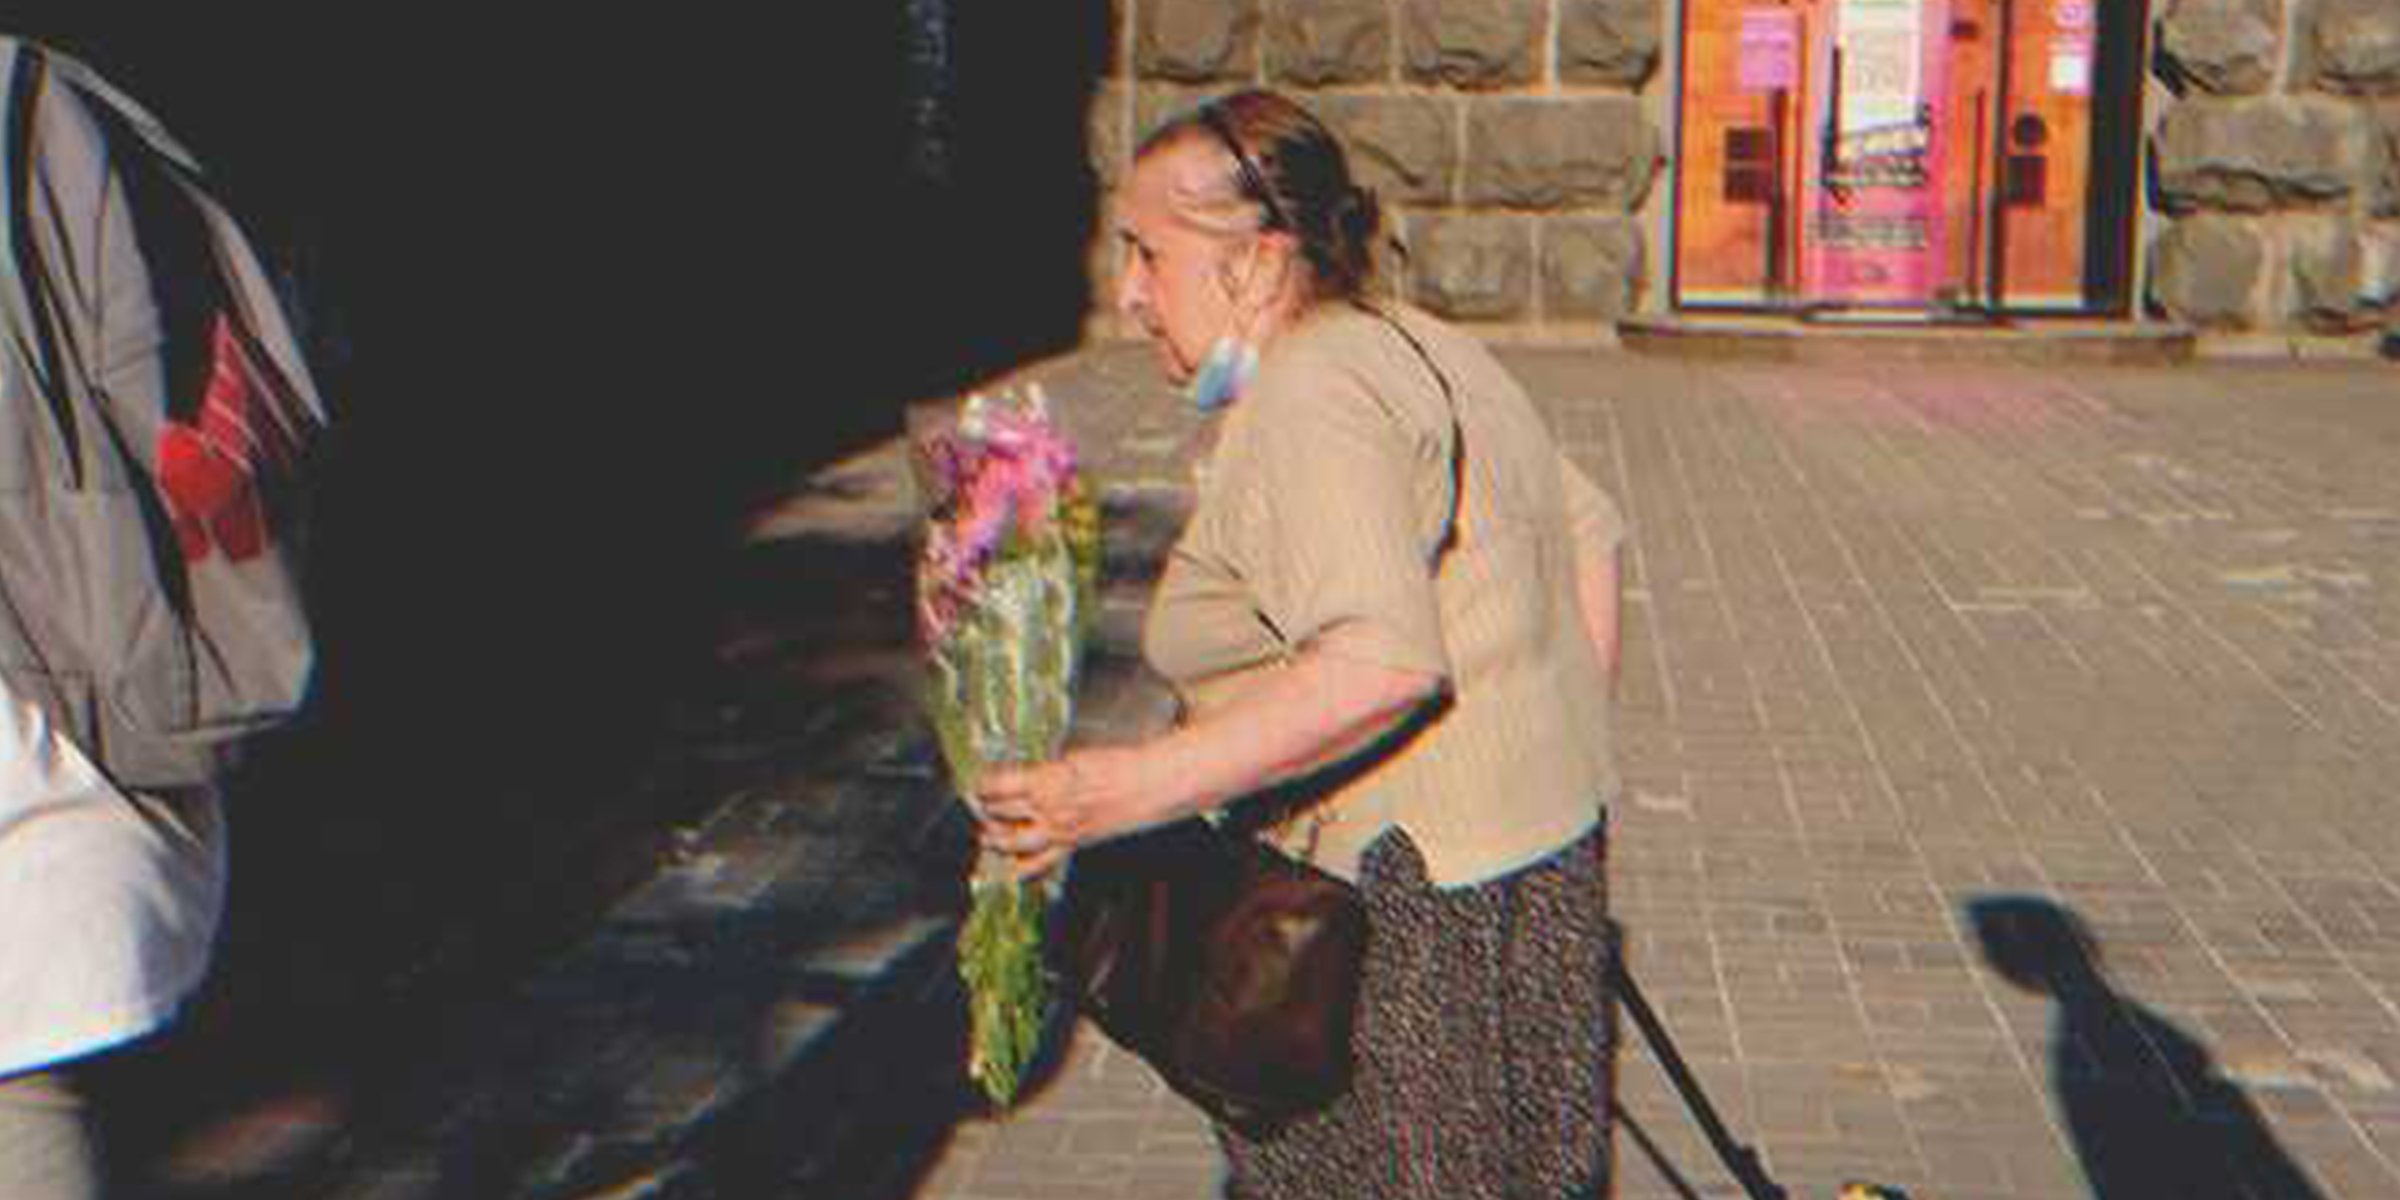 Frau mit Blumen | Quelle: Shutterstock